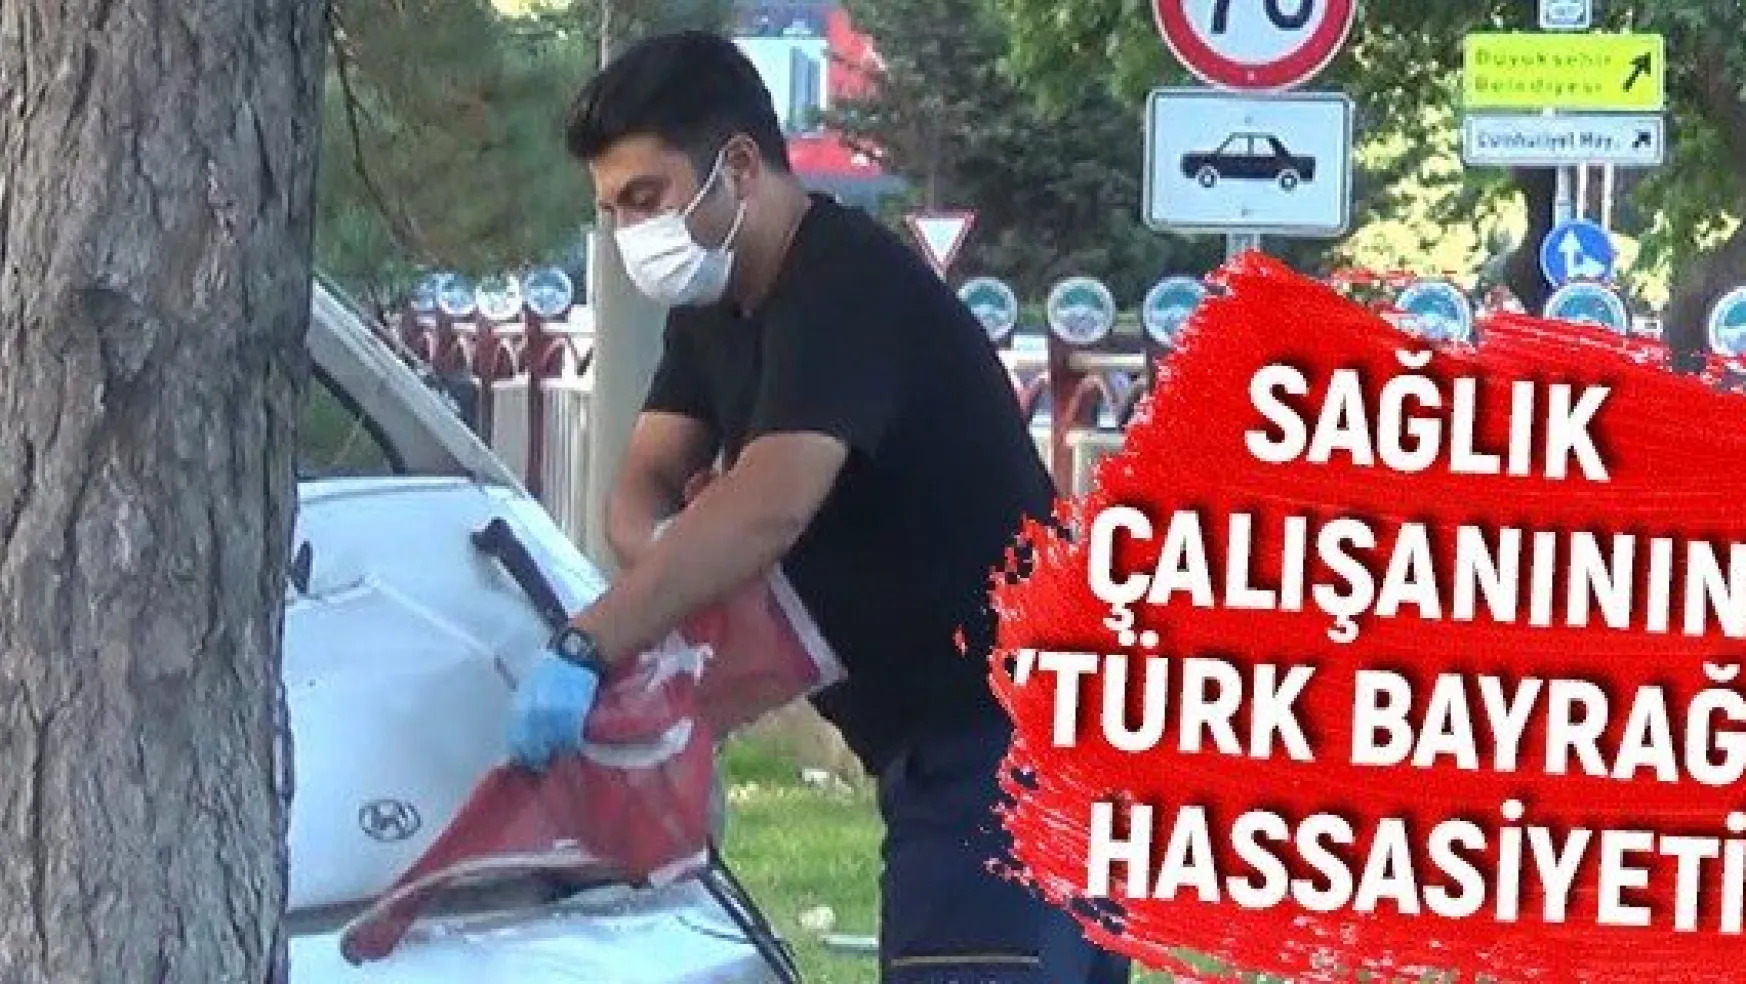 Sağlık çalışanının 'Türk bayrağı' hassasiyeti